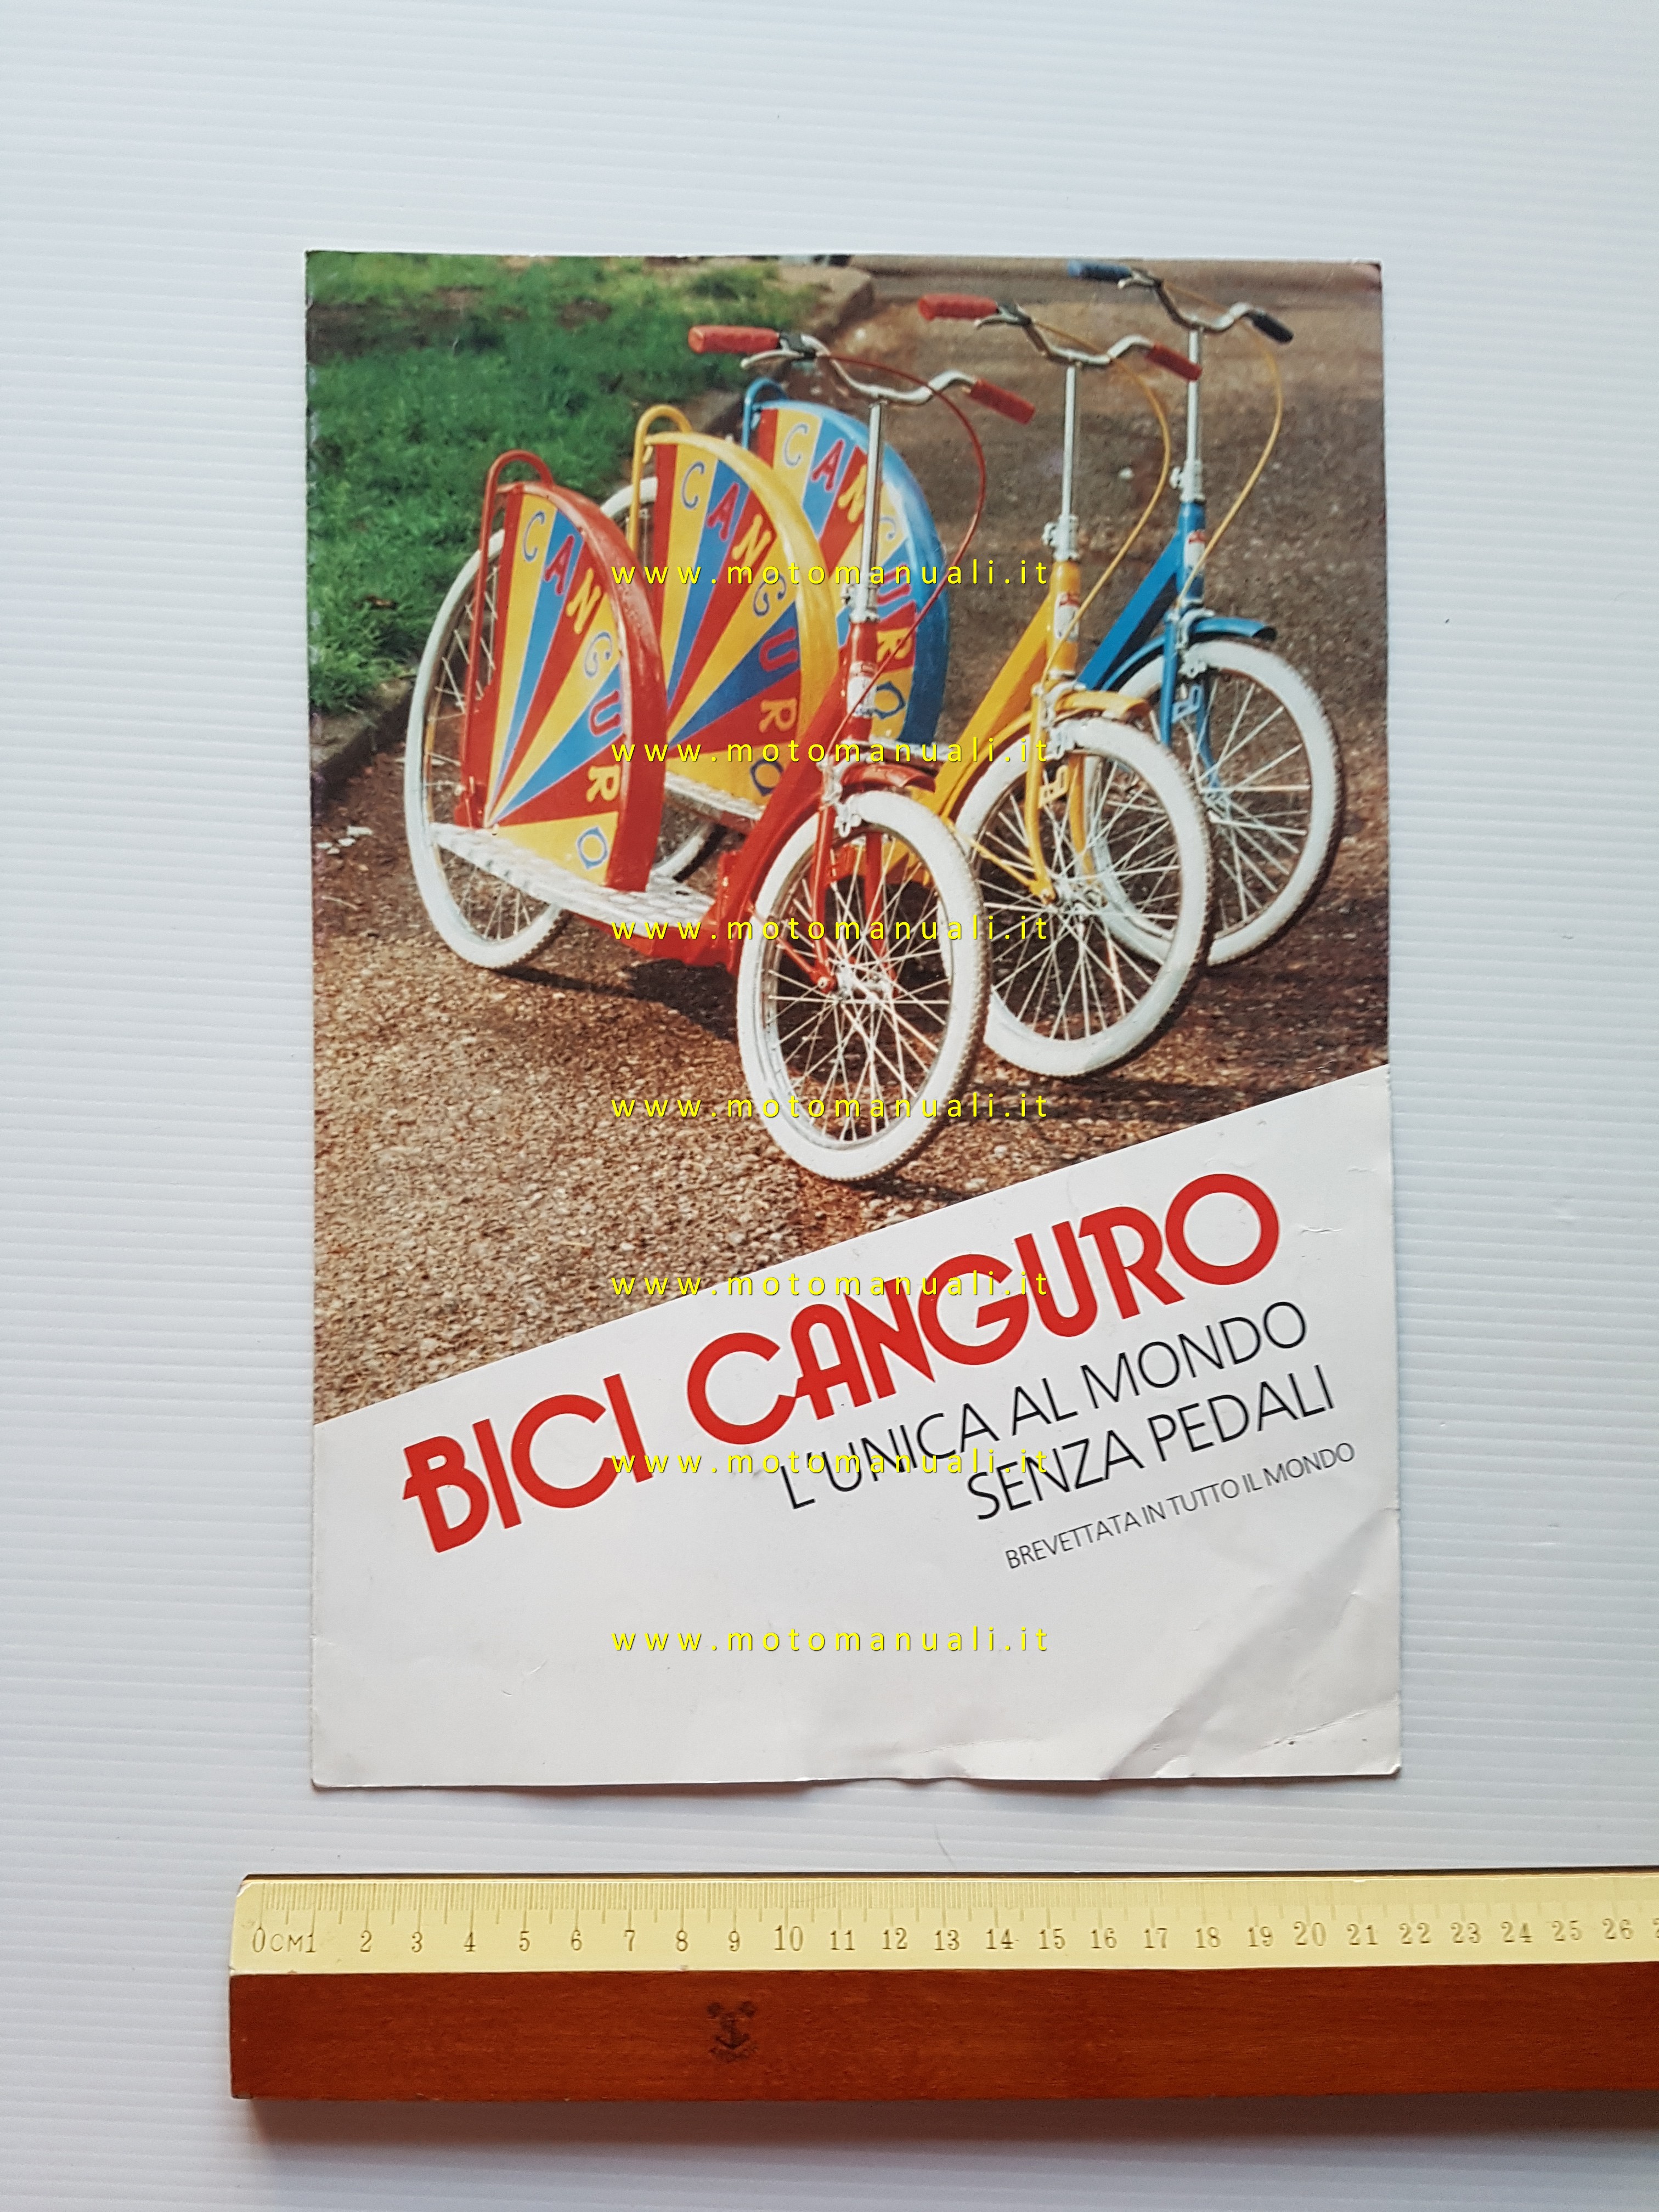 Eurobox Canguro bicicletta senza pedali anni 70 depliant originale